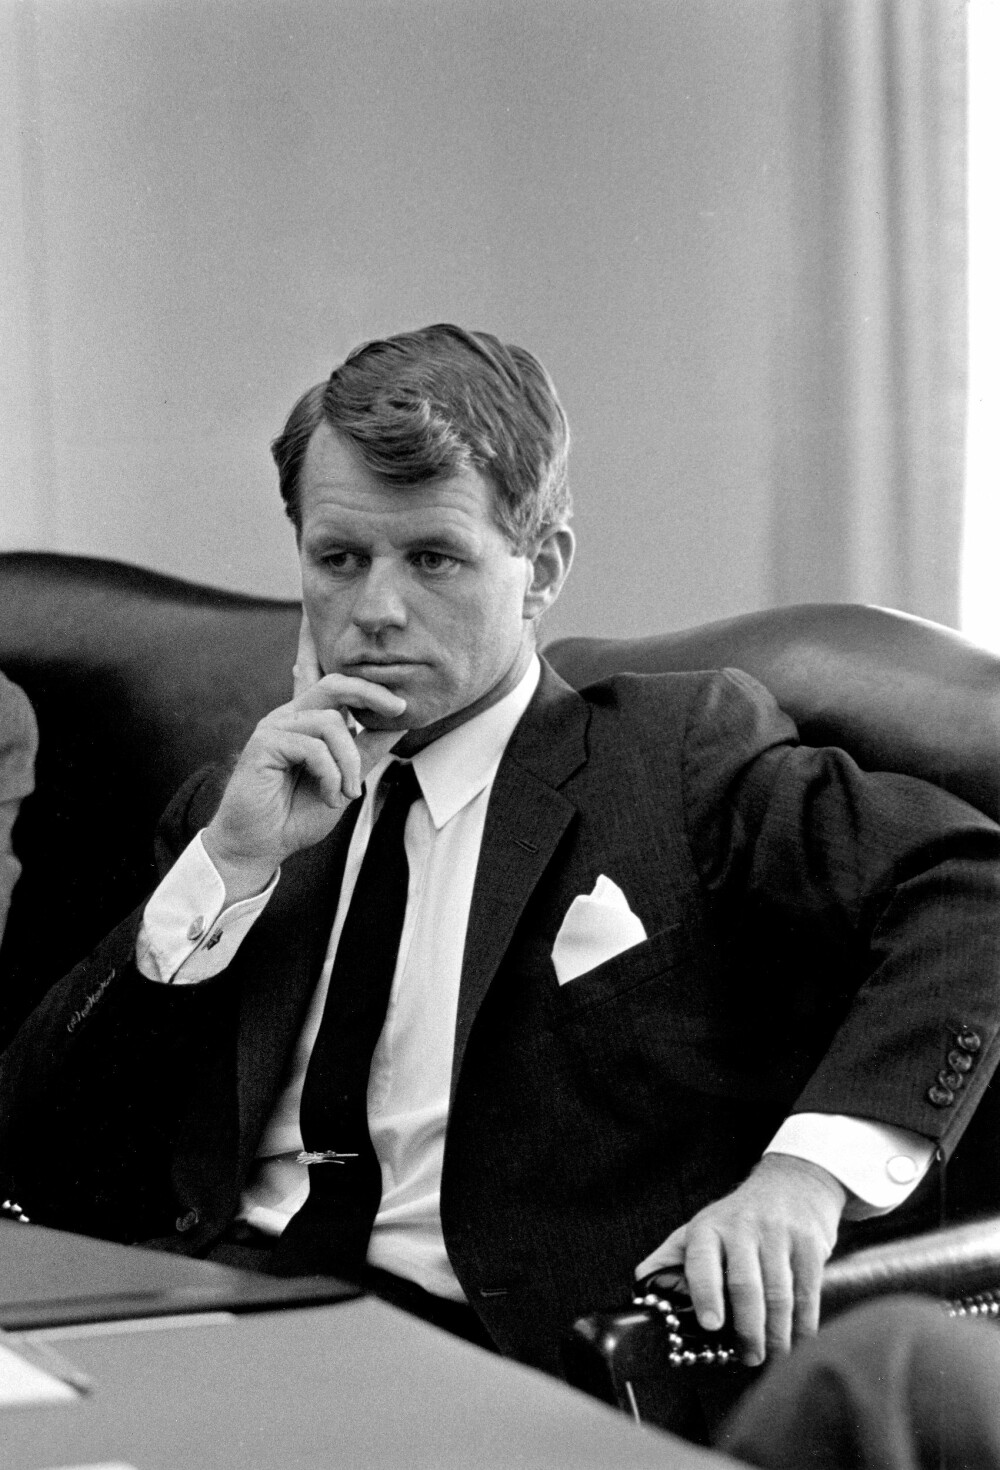 Flere hevder det var lillebror Robert Kennedy som selv fjernet hjernen etter JFK for å skjule hans helseproblemer og dopforbruk. 